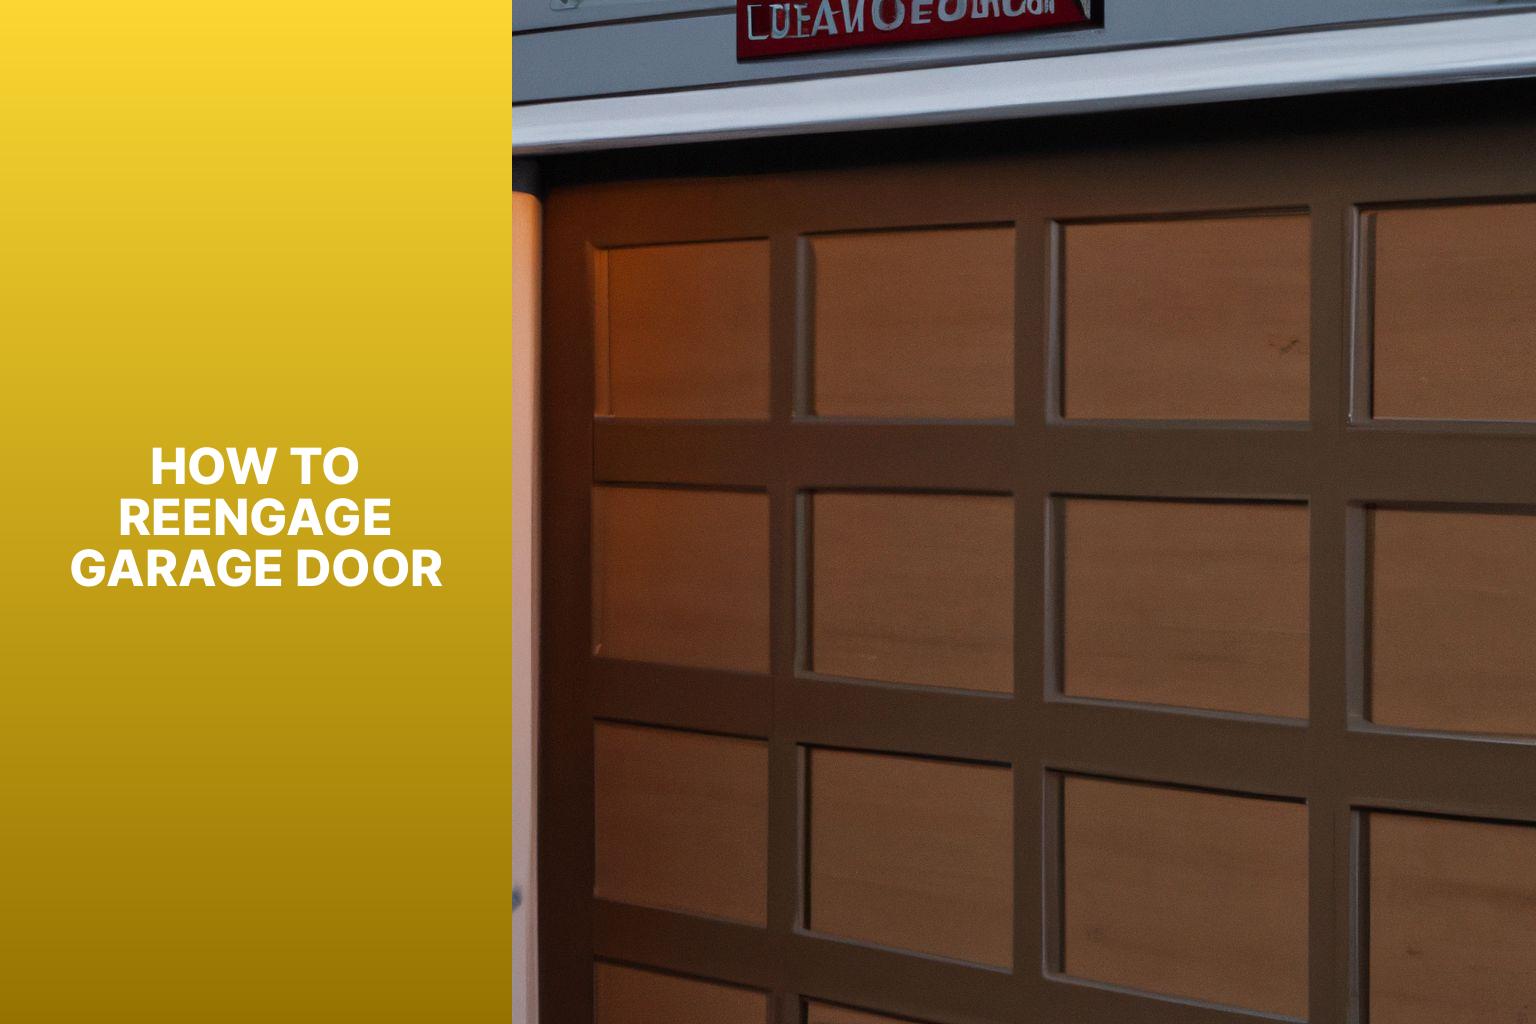 How to Reengage Garage Door